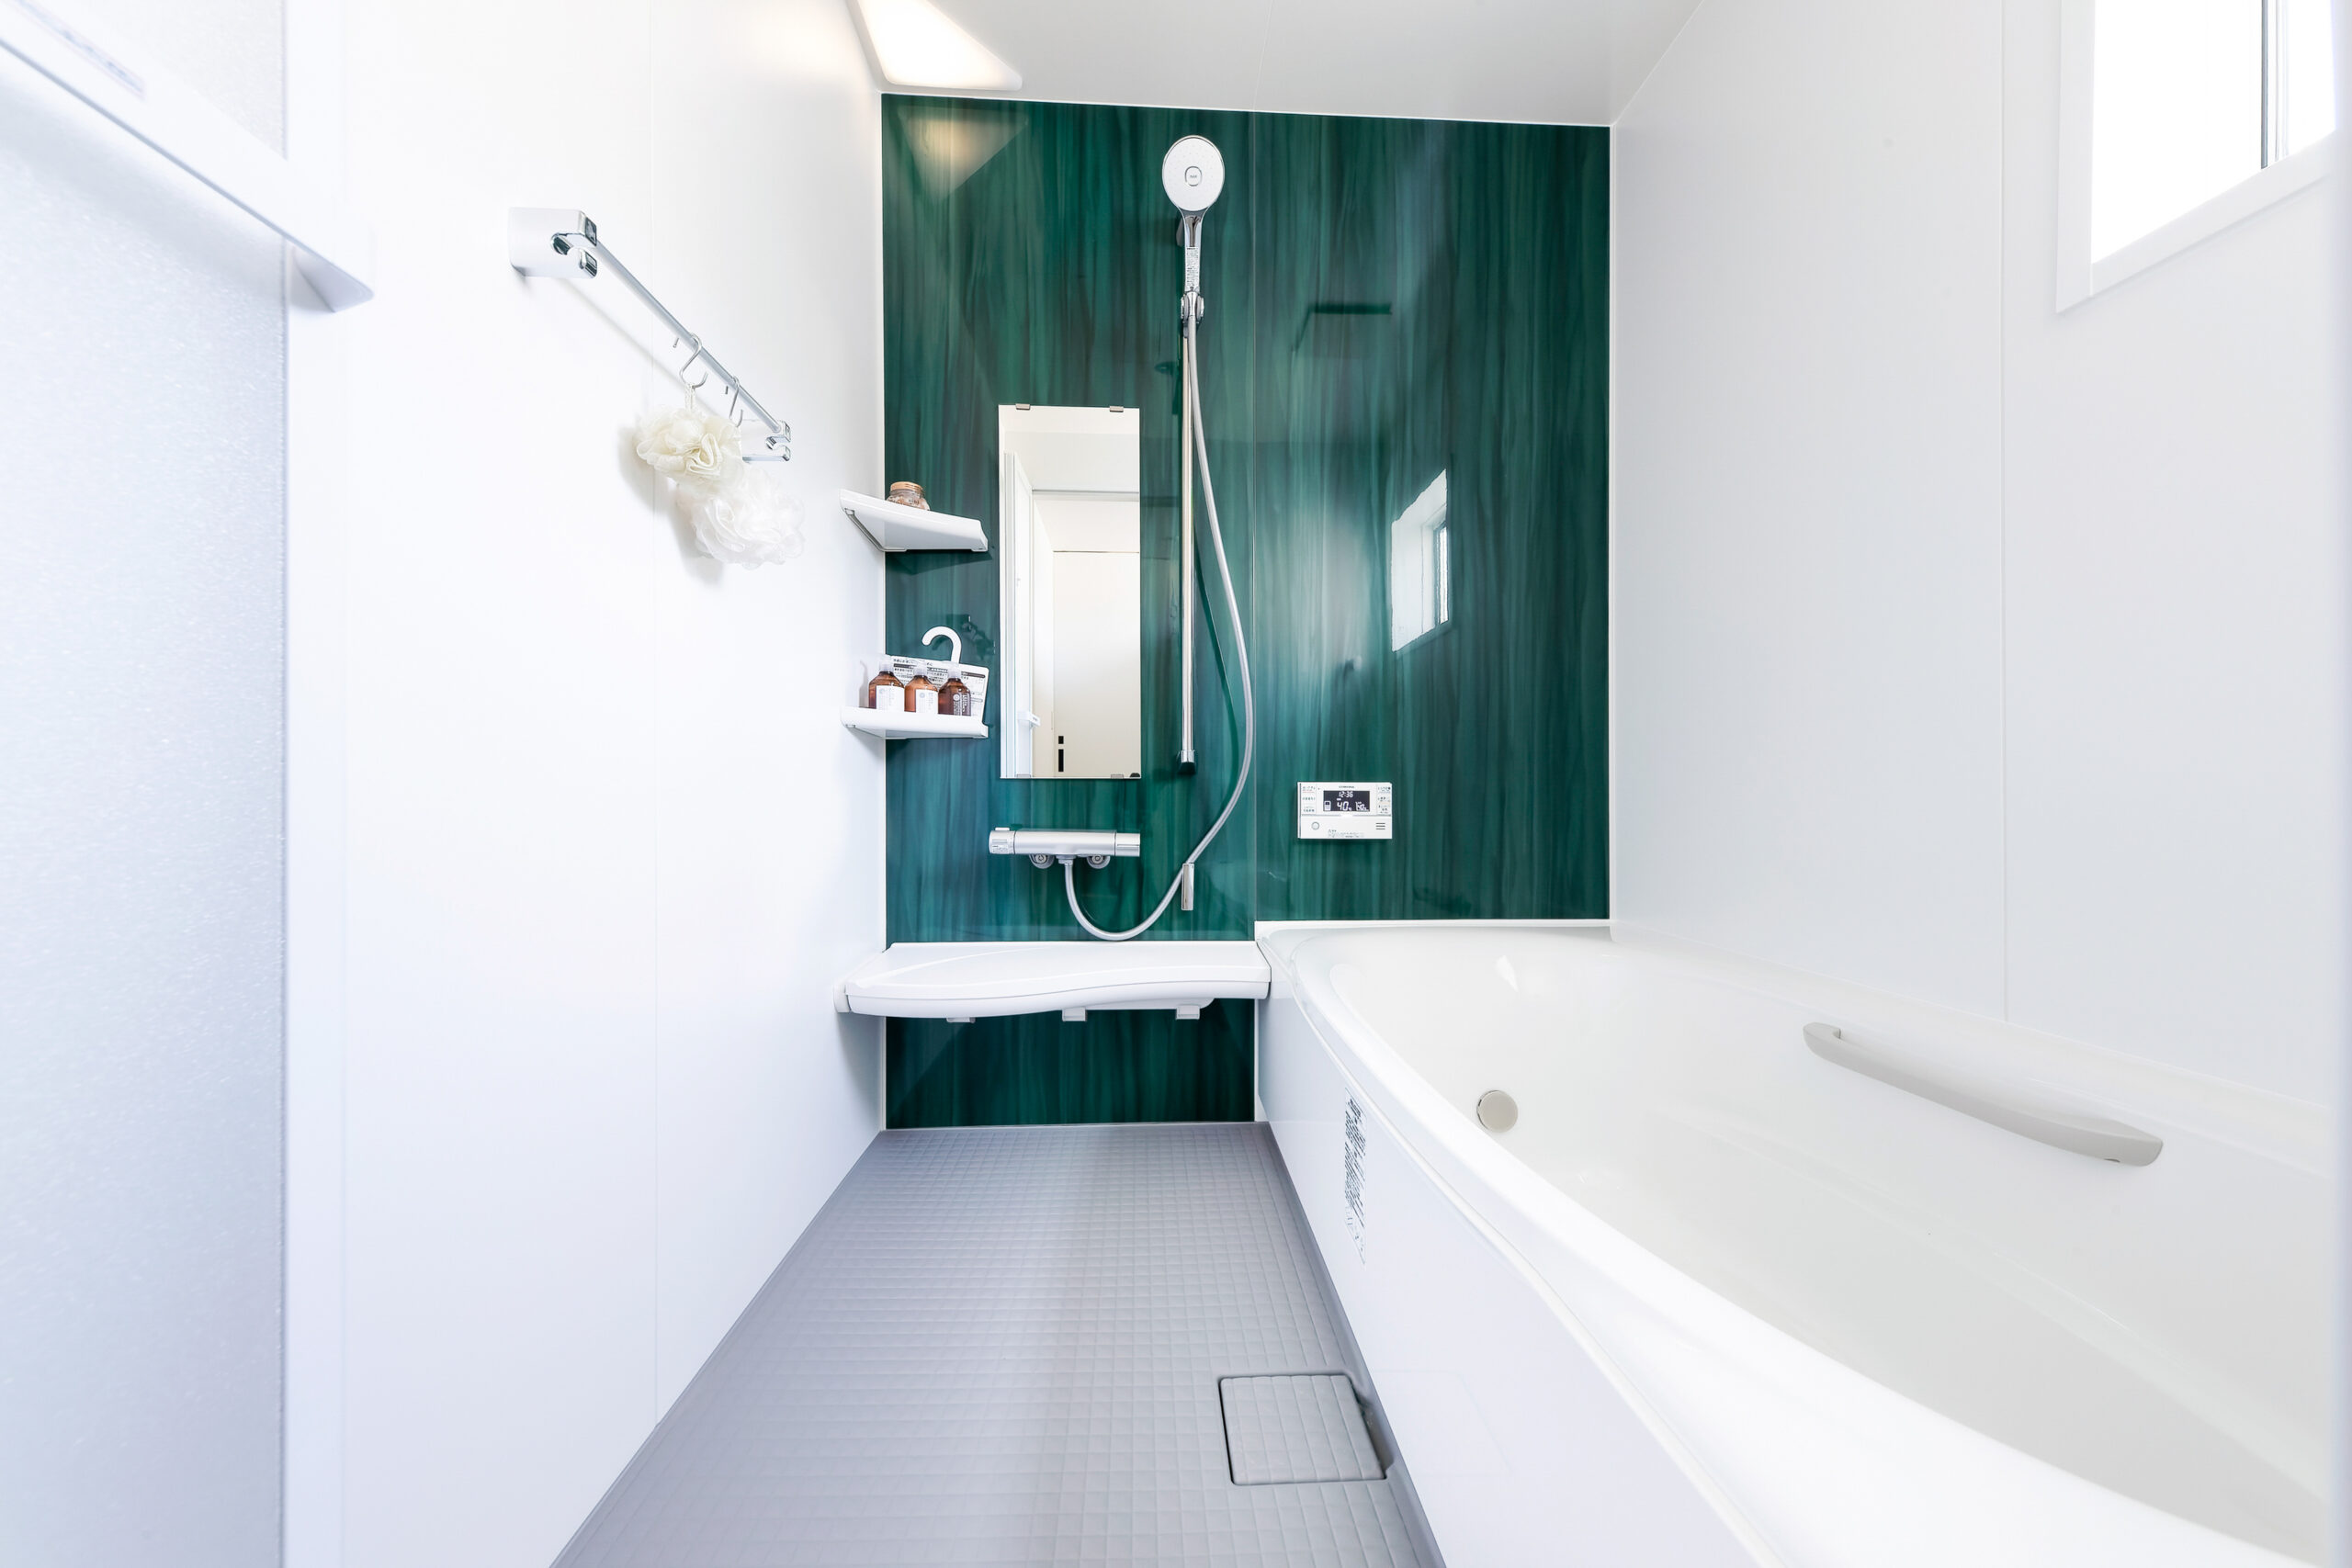 このモデルハウスのテーマカラーでもあるグリーンのパネルを使用した浴室。